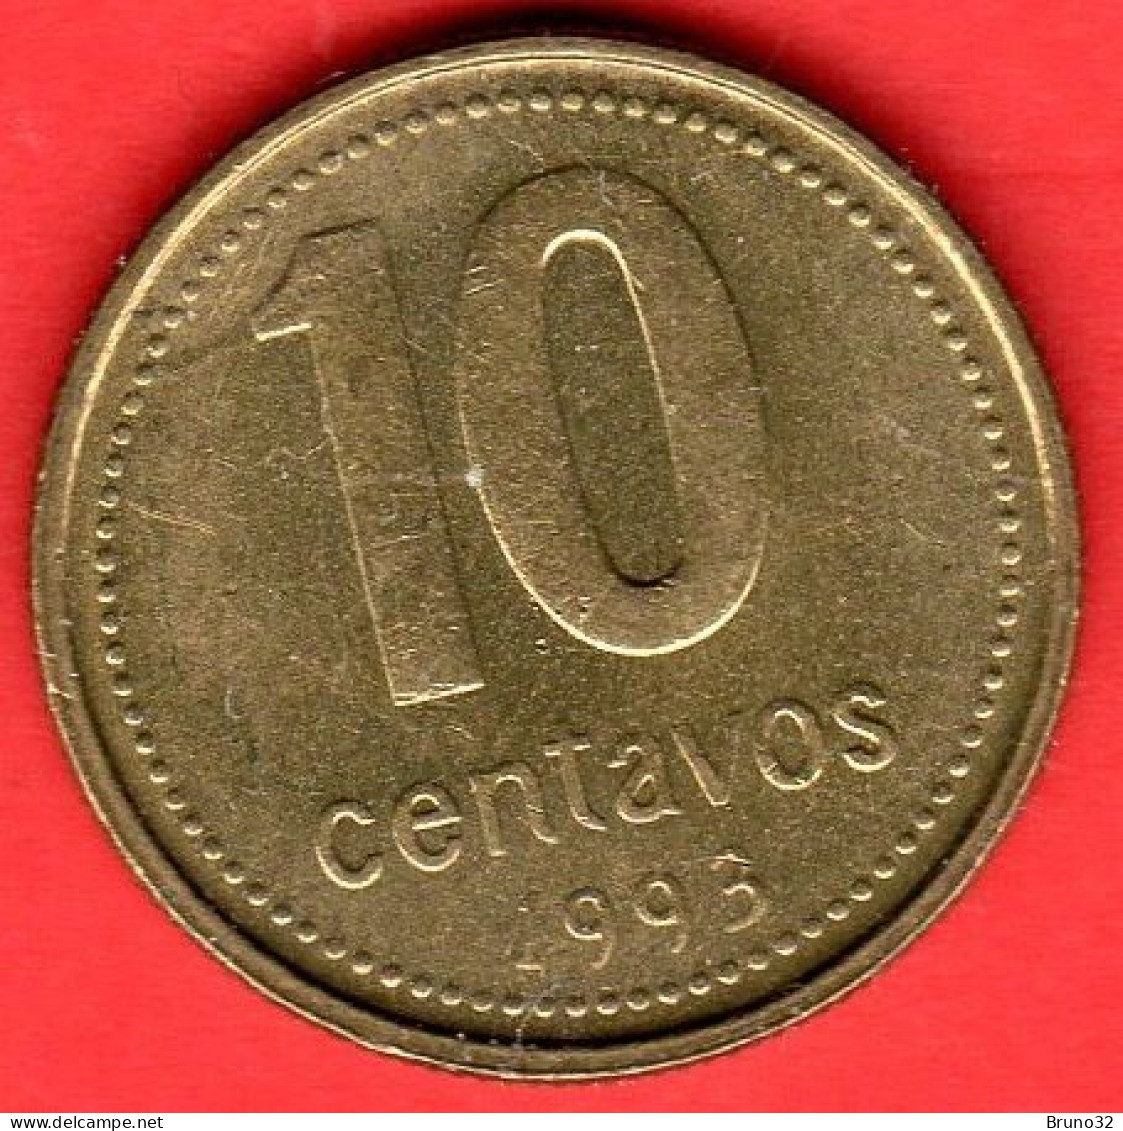 ARGENTINA - 1993 - 10 Centavos - QFDC/aUNC - Come Da Foto - Argentine